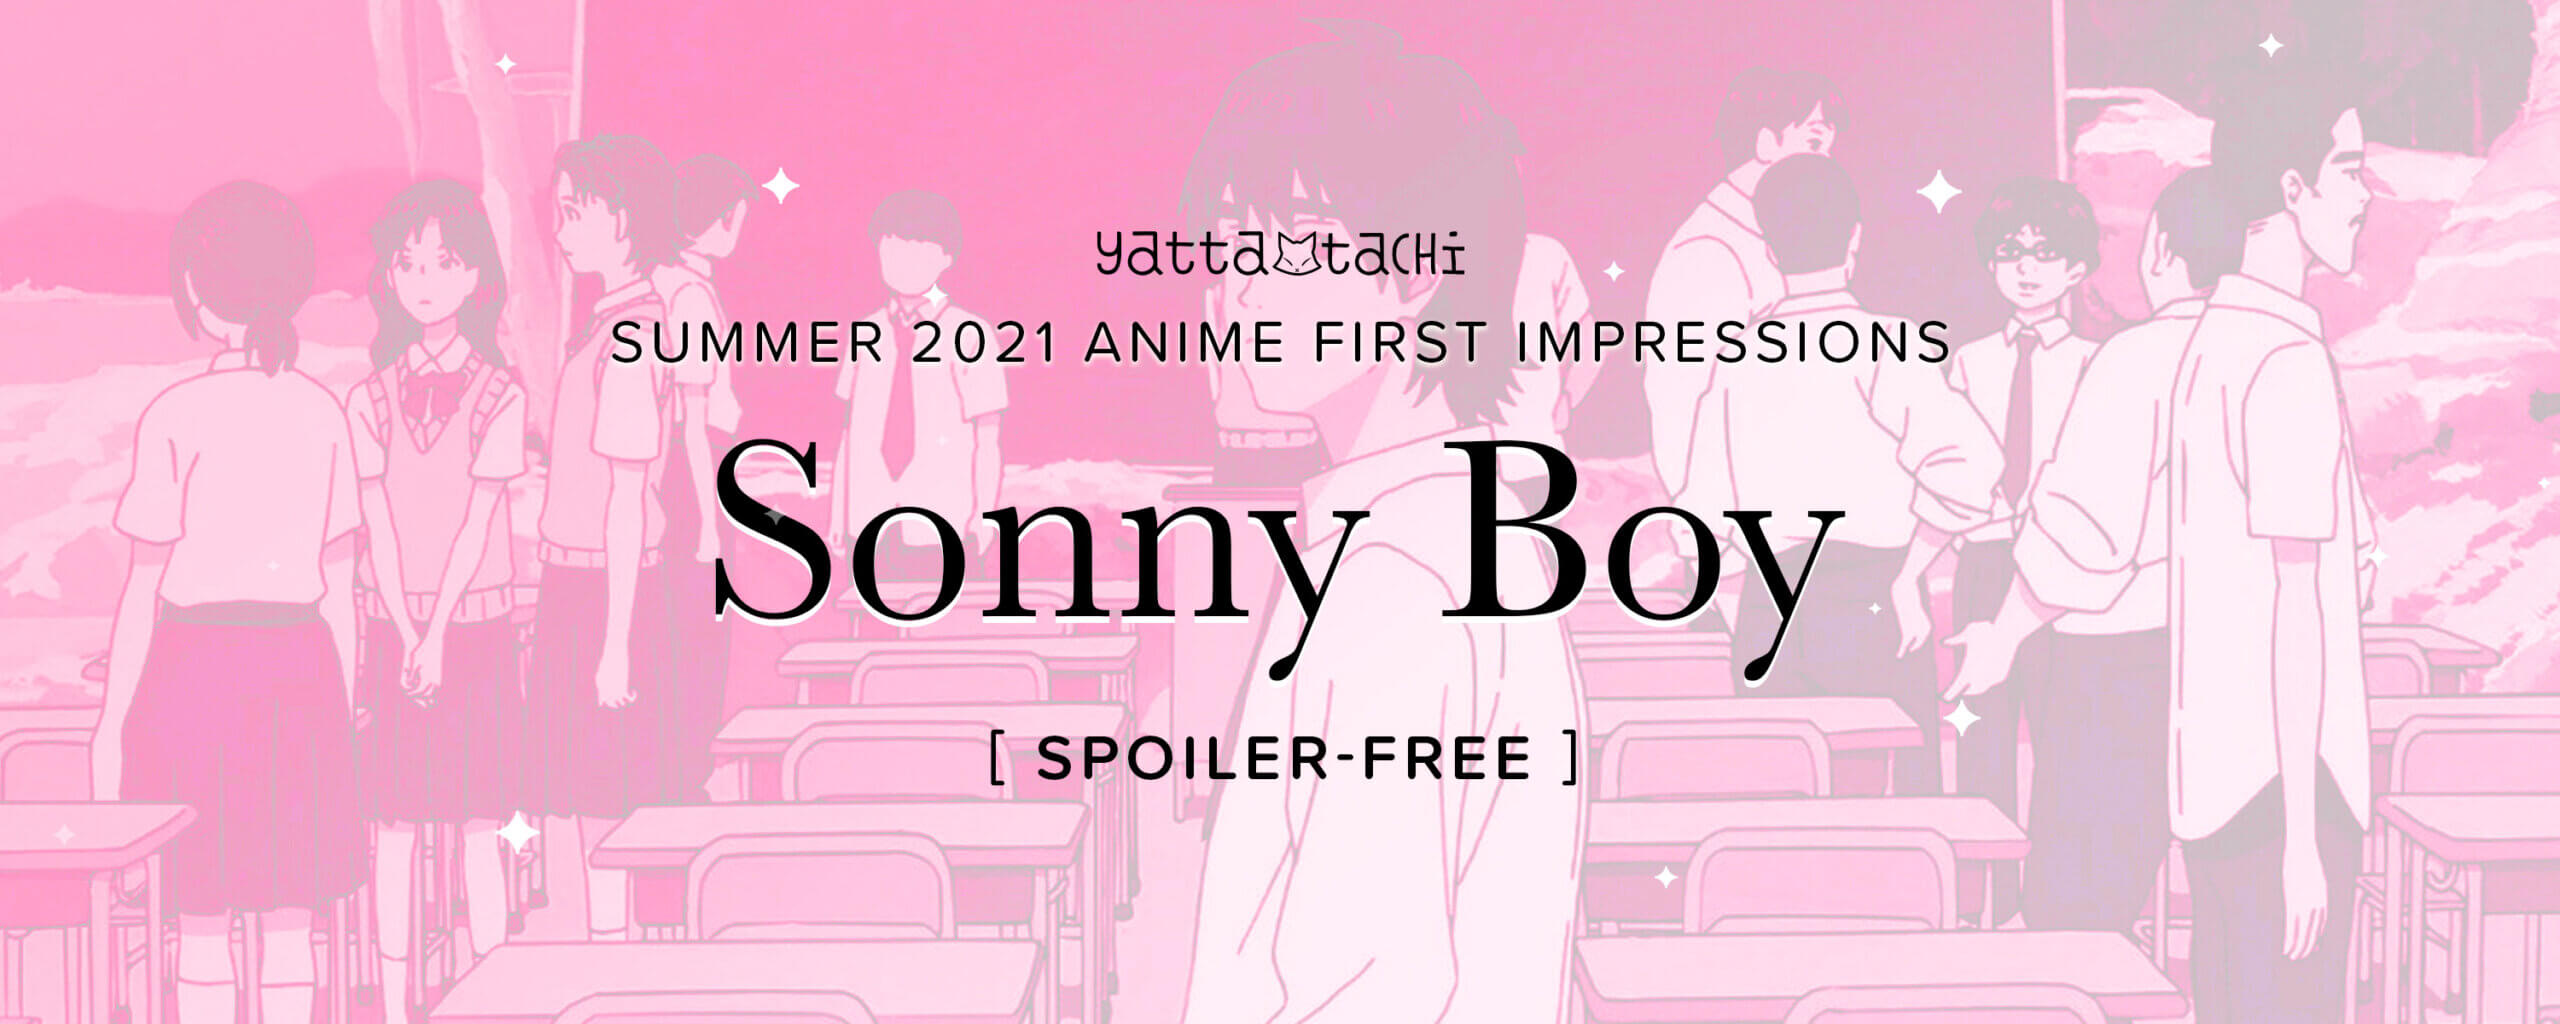 Sonny Boy Episode 12 [Final Impression]